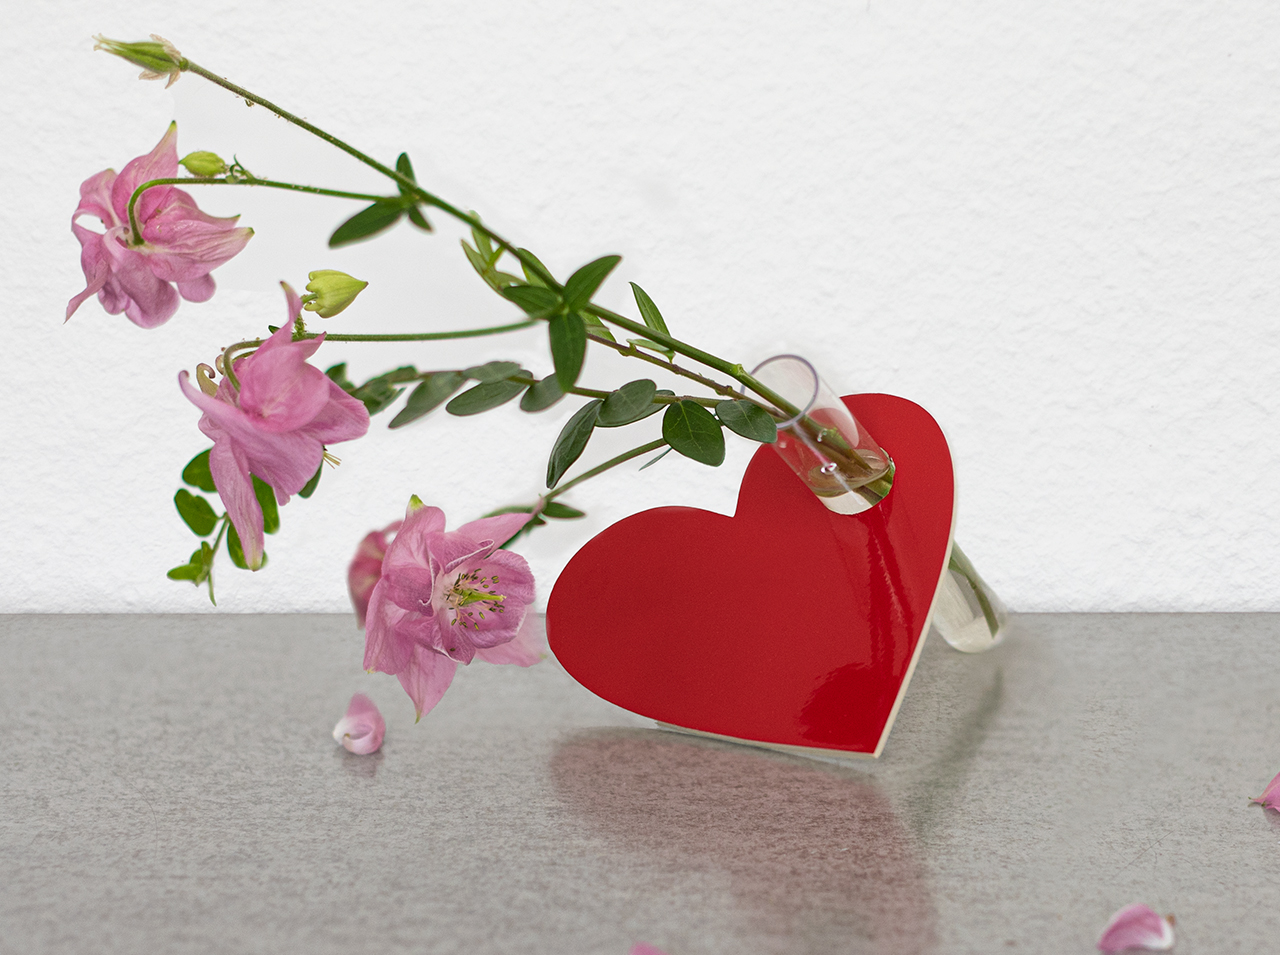 Cœur en contreplaqué recouvert d’un film de couleur rouge signalisation et orné d’une petite éprouvette intégrée, décorée de fleurs fraîches.